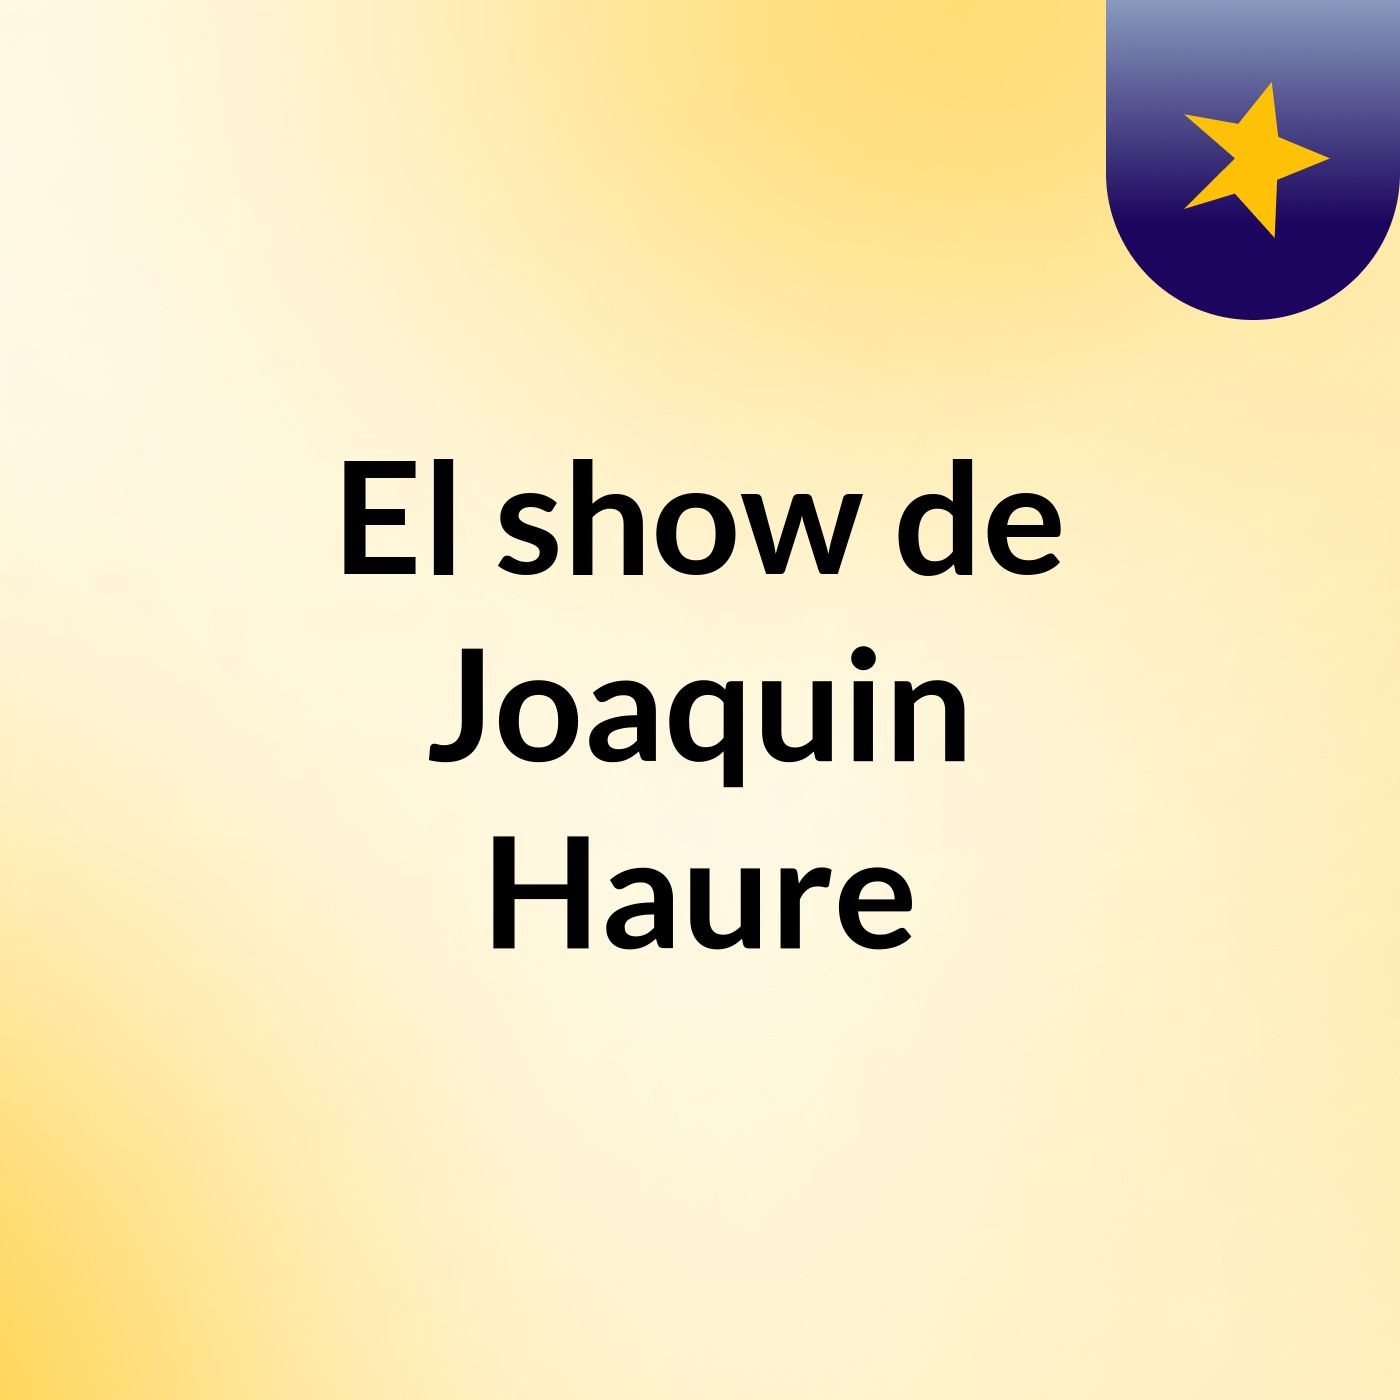 El show de Joaquin Haure